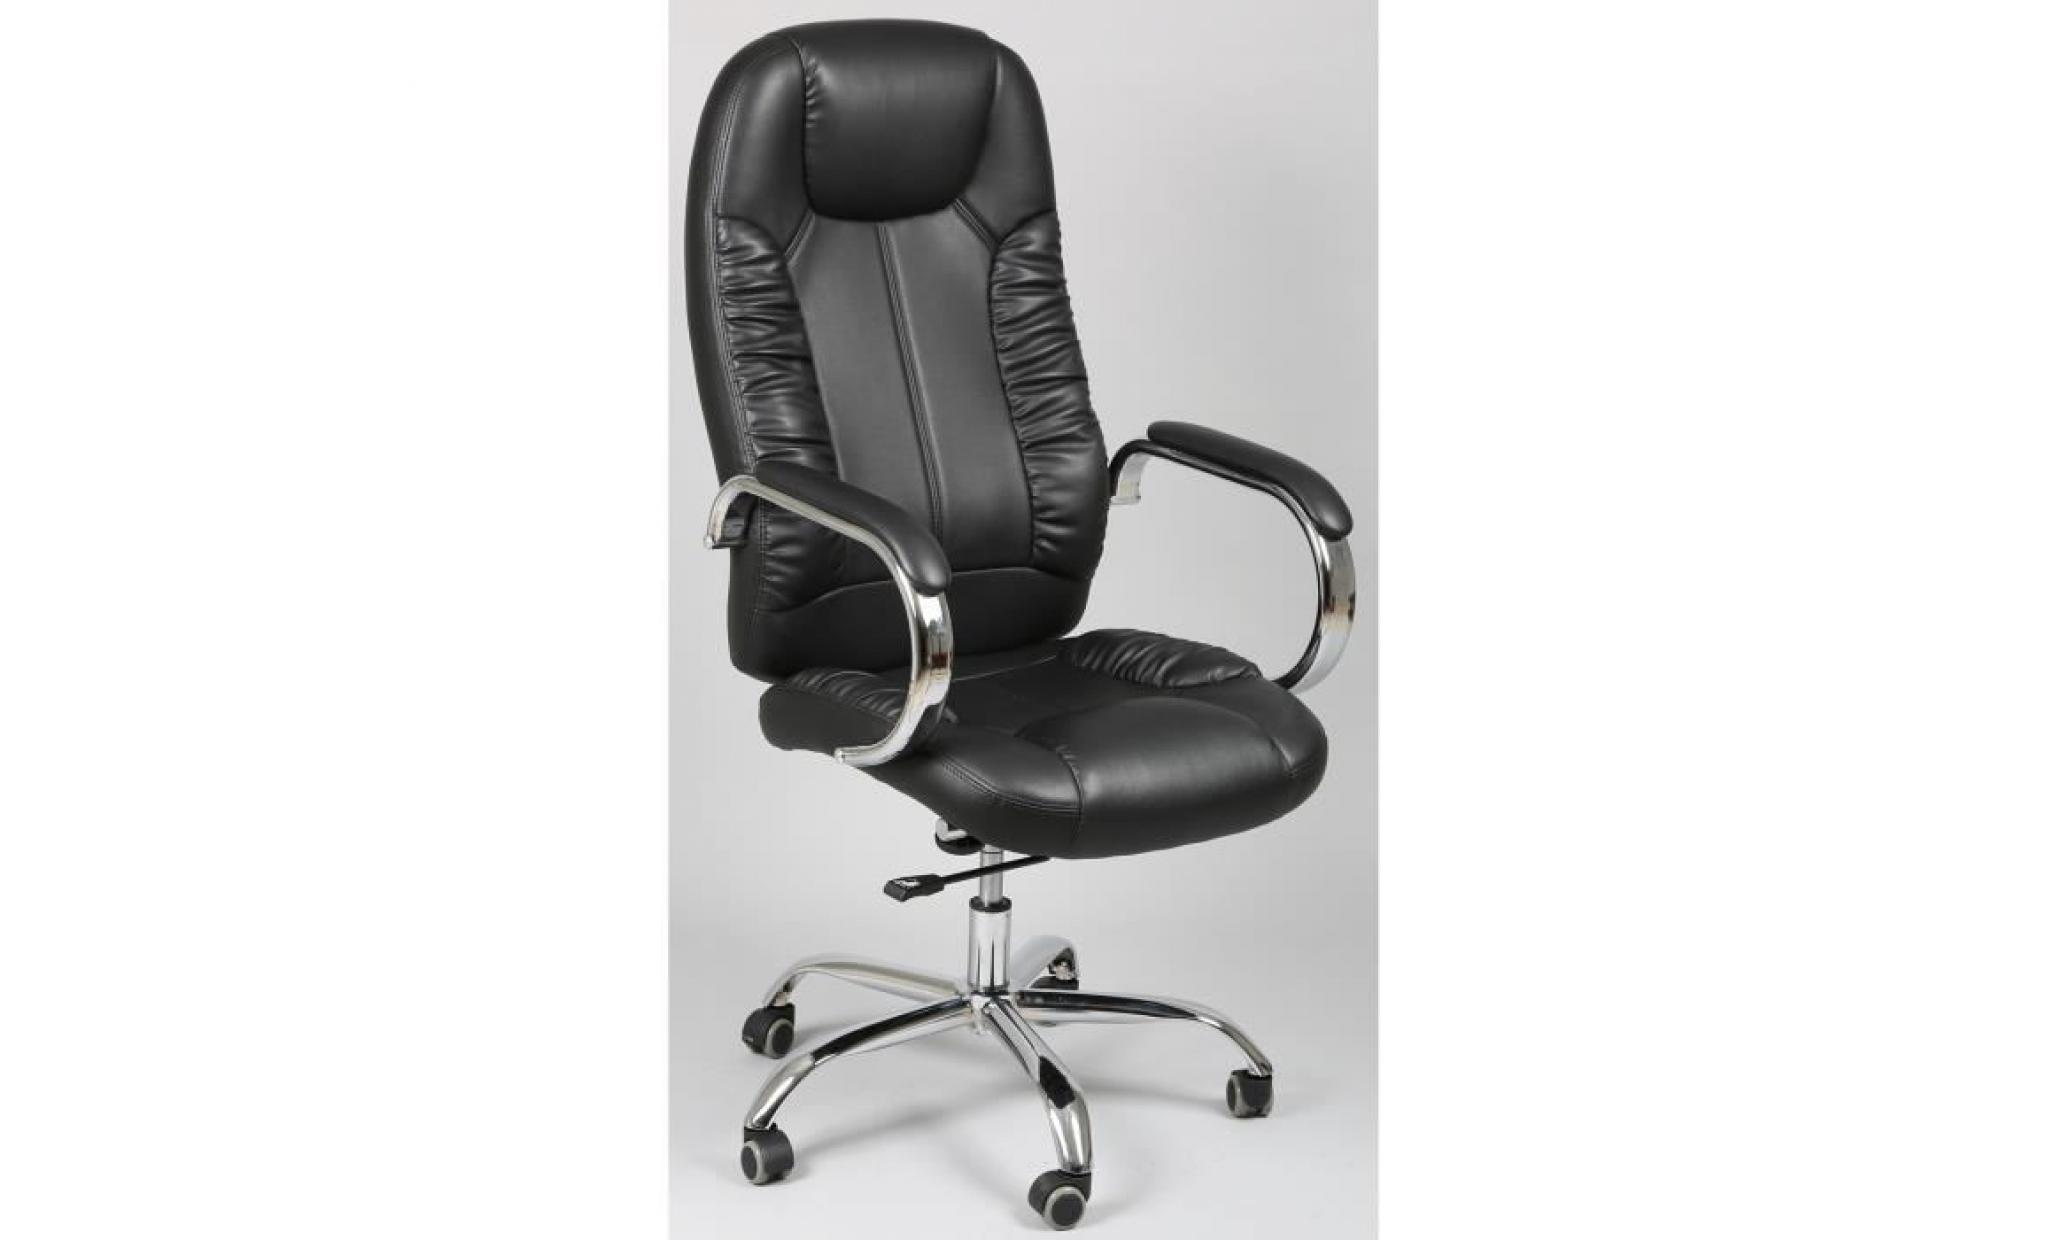 fauteuil de bureau en pu coloris noir   dim :  ht 1190 à 1240 x ht ass de 490 à 540 x l 695 x p 590 mm